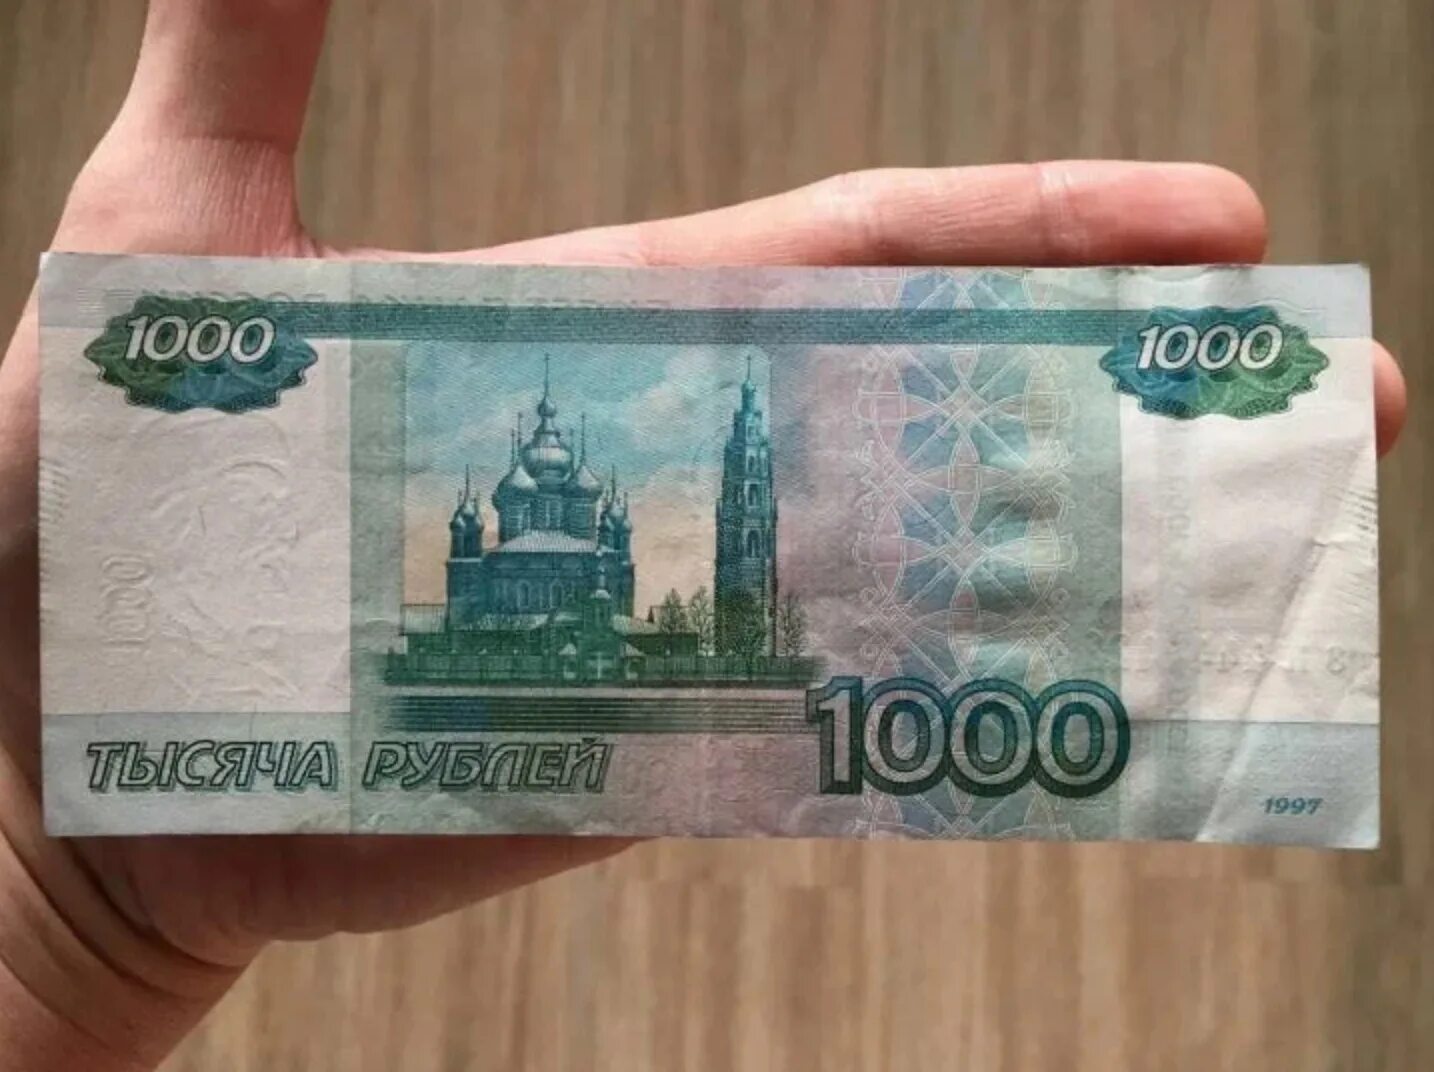 Купюра 1000 рублей купить